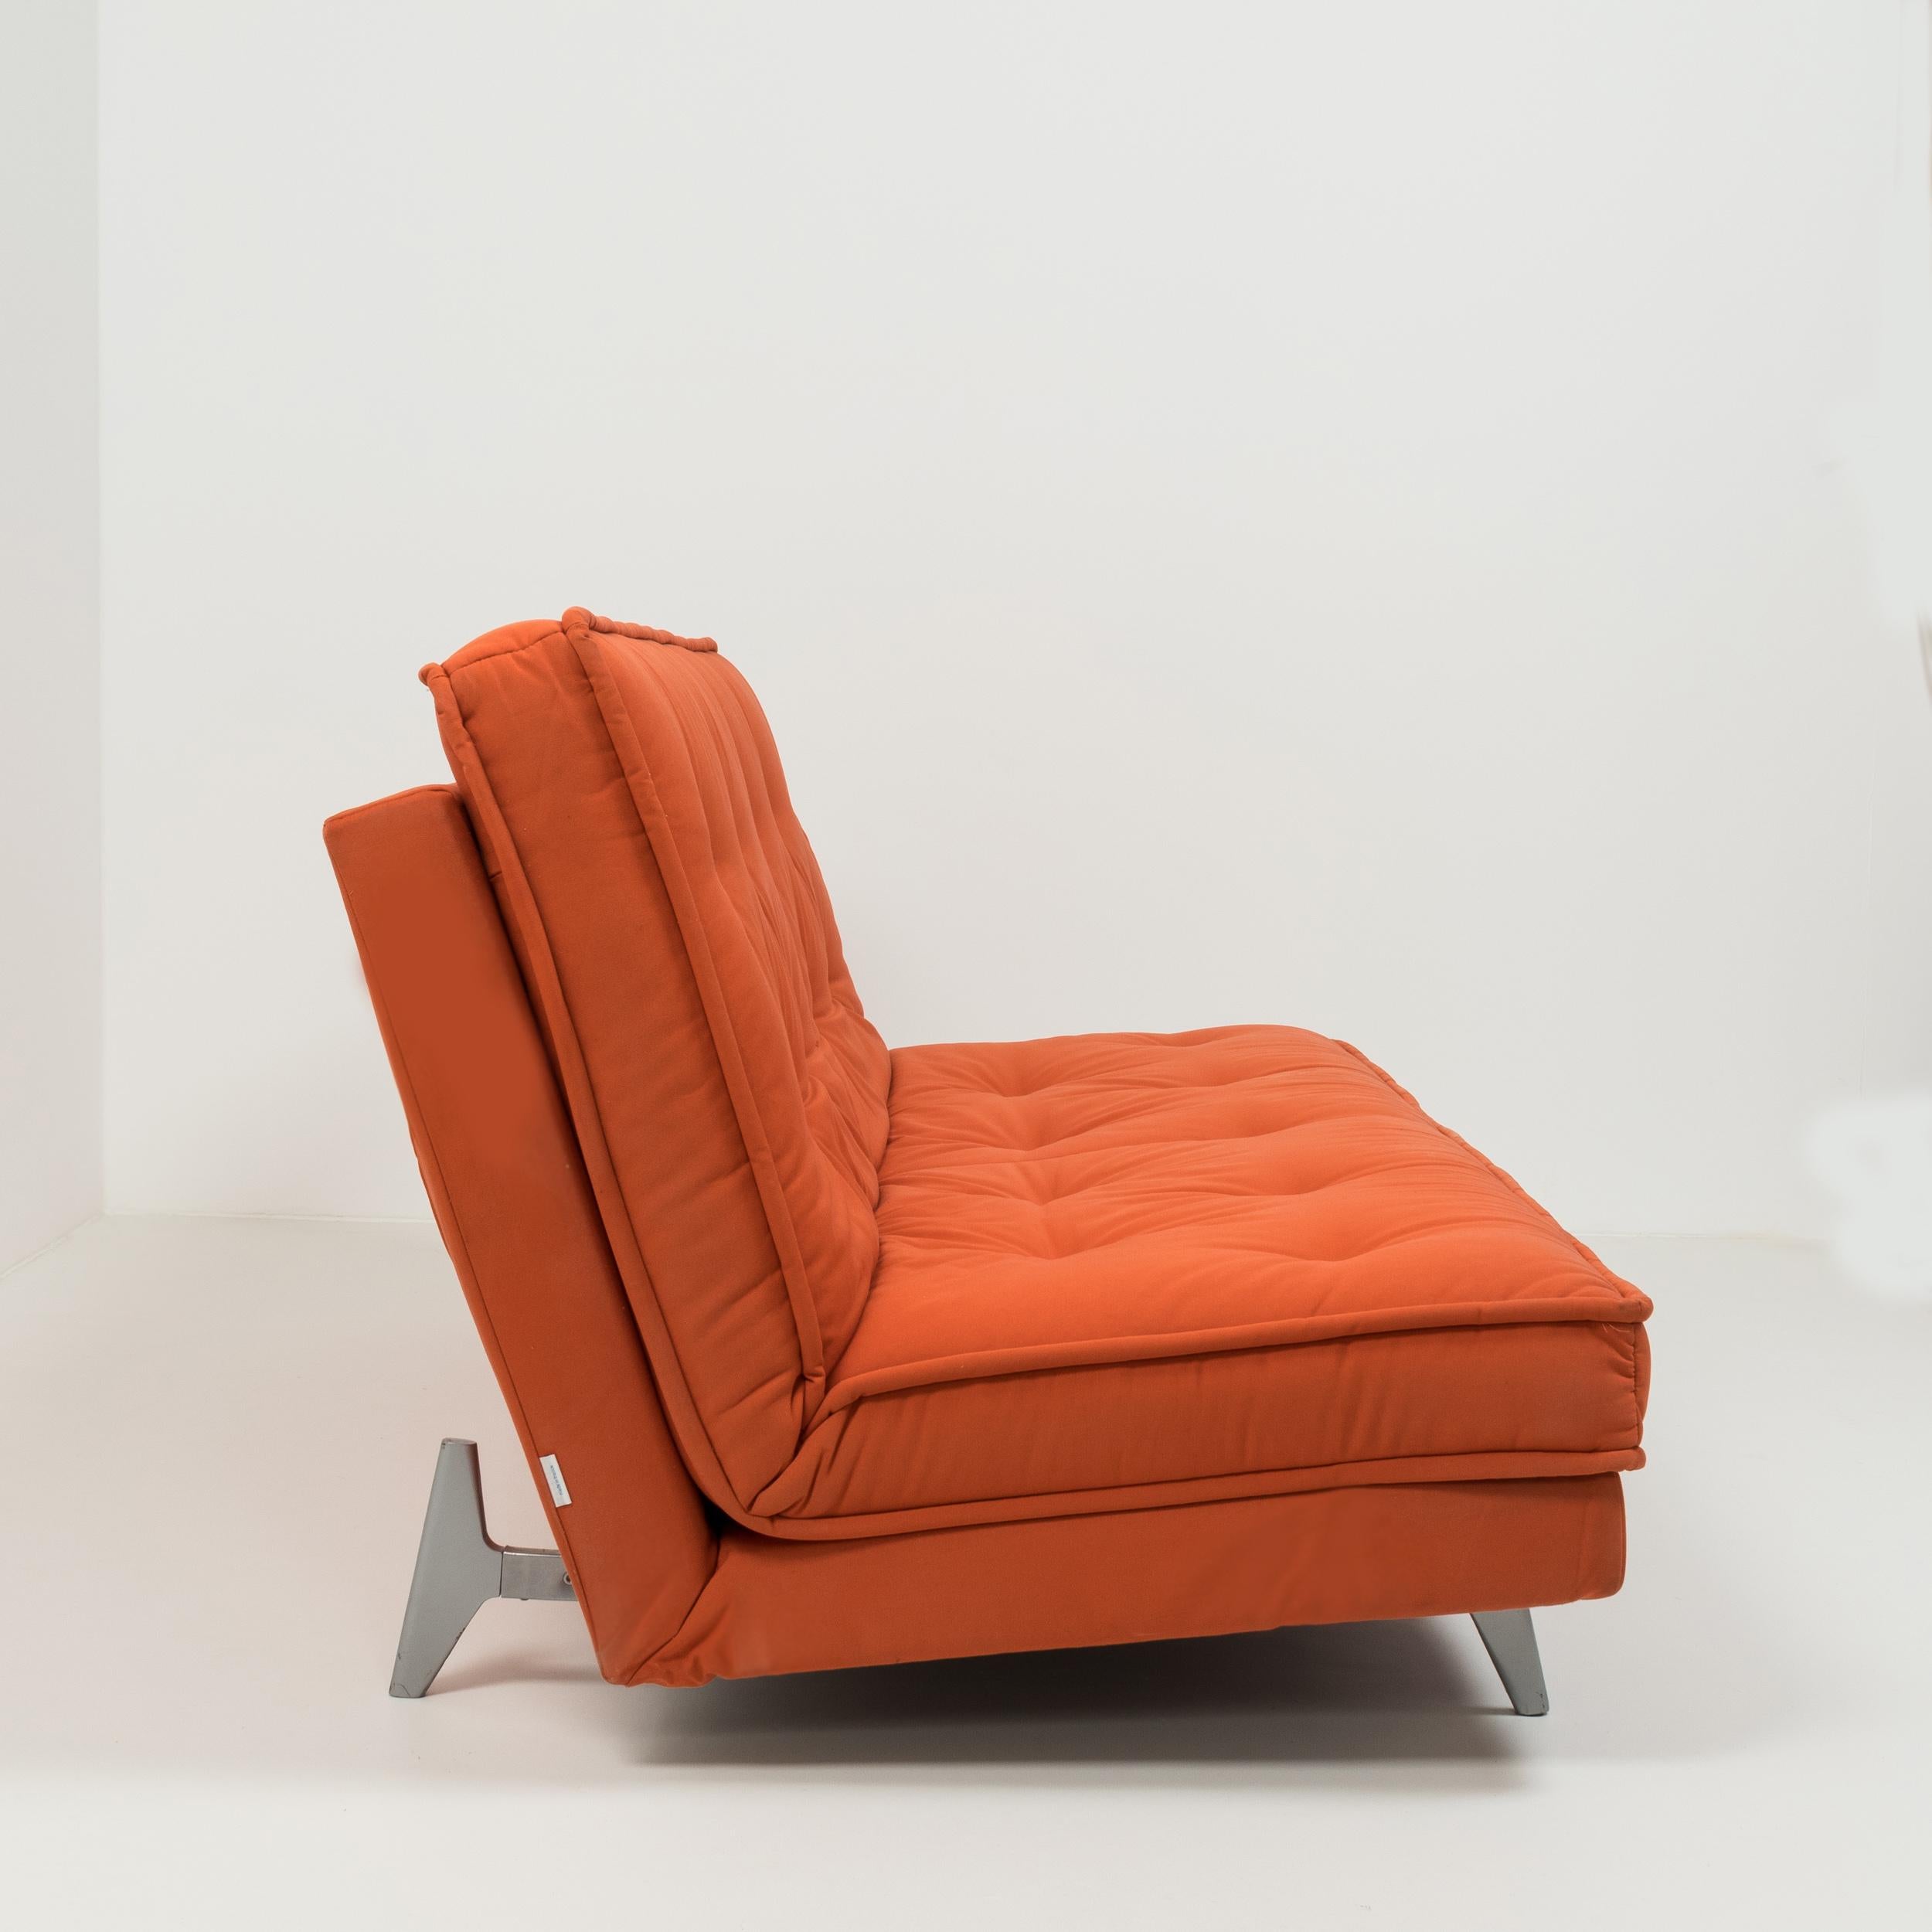 Parfait équilibre entre praticité et style moderne:: ce canapé-lit Nomade Express a été conçu par Didier Gomez pour Linge Roset. 

Composé d'un cadre en acier et d'un seul coussin:: le canapé-lit est tapissé d'un tissu rouge en mélange de coton et